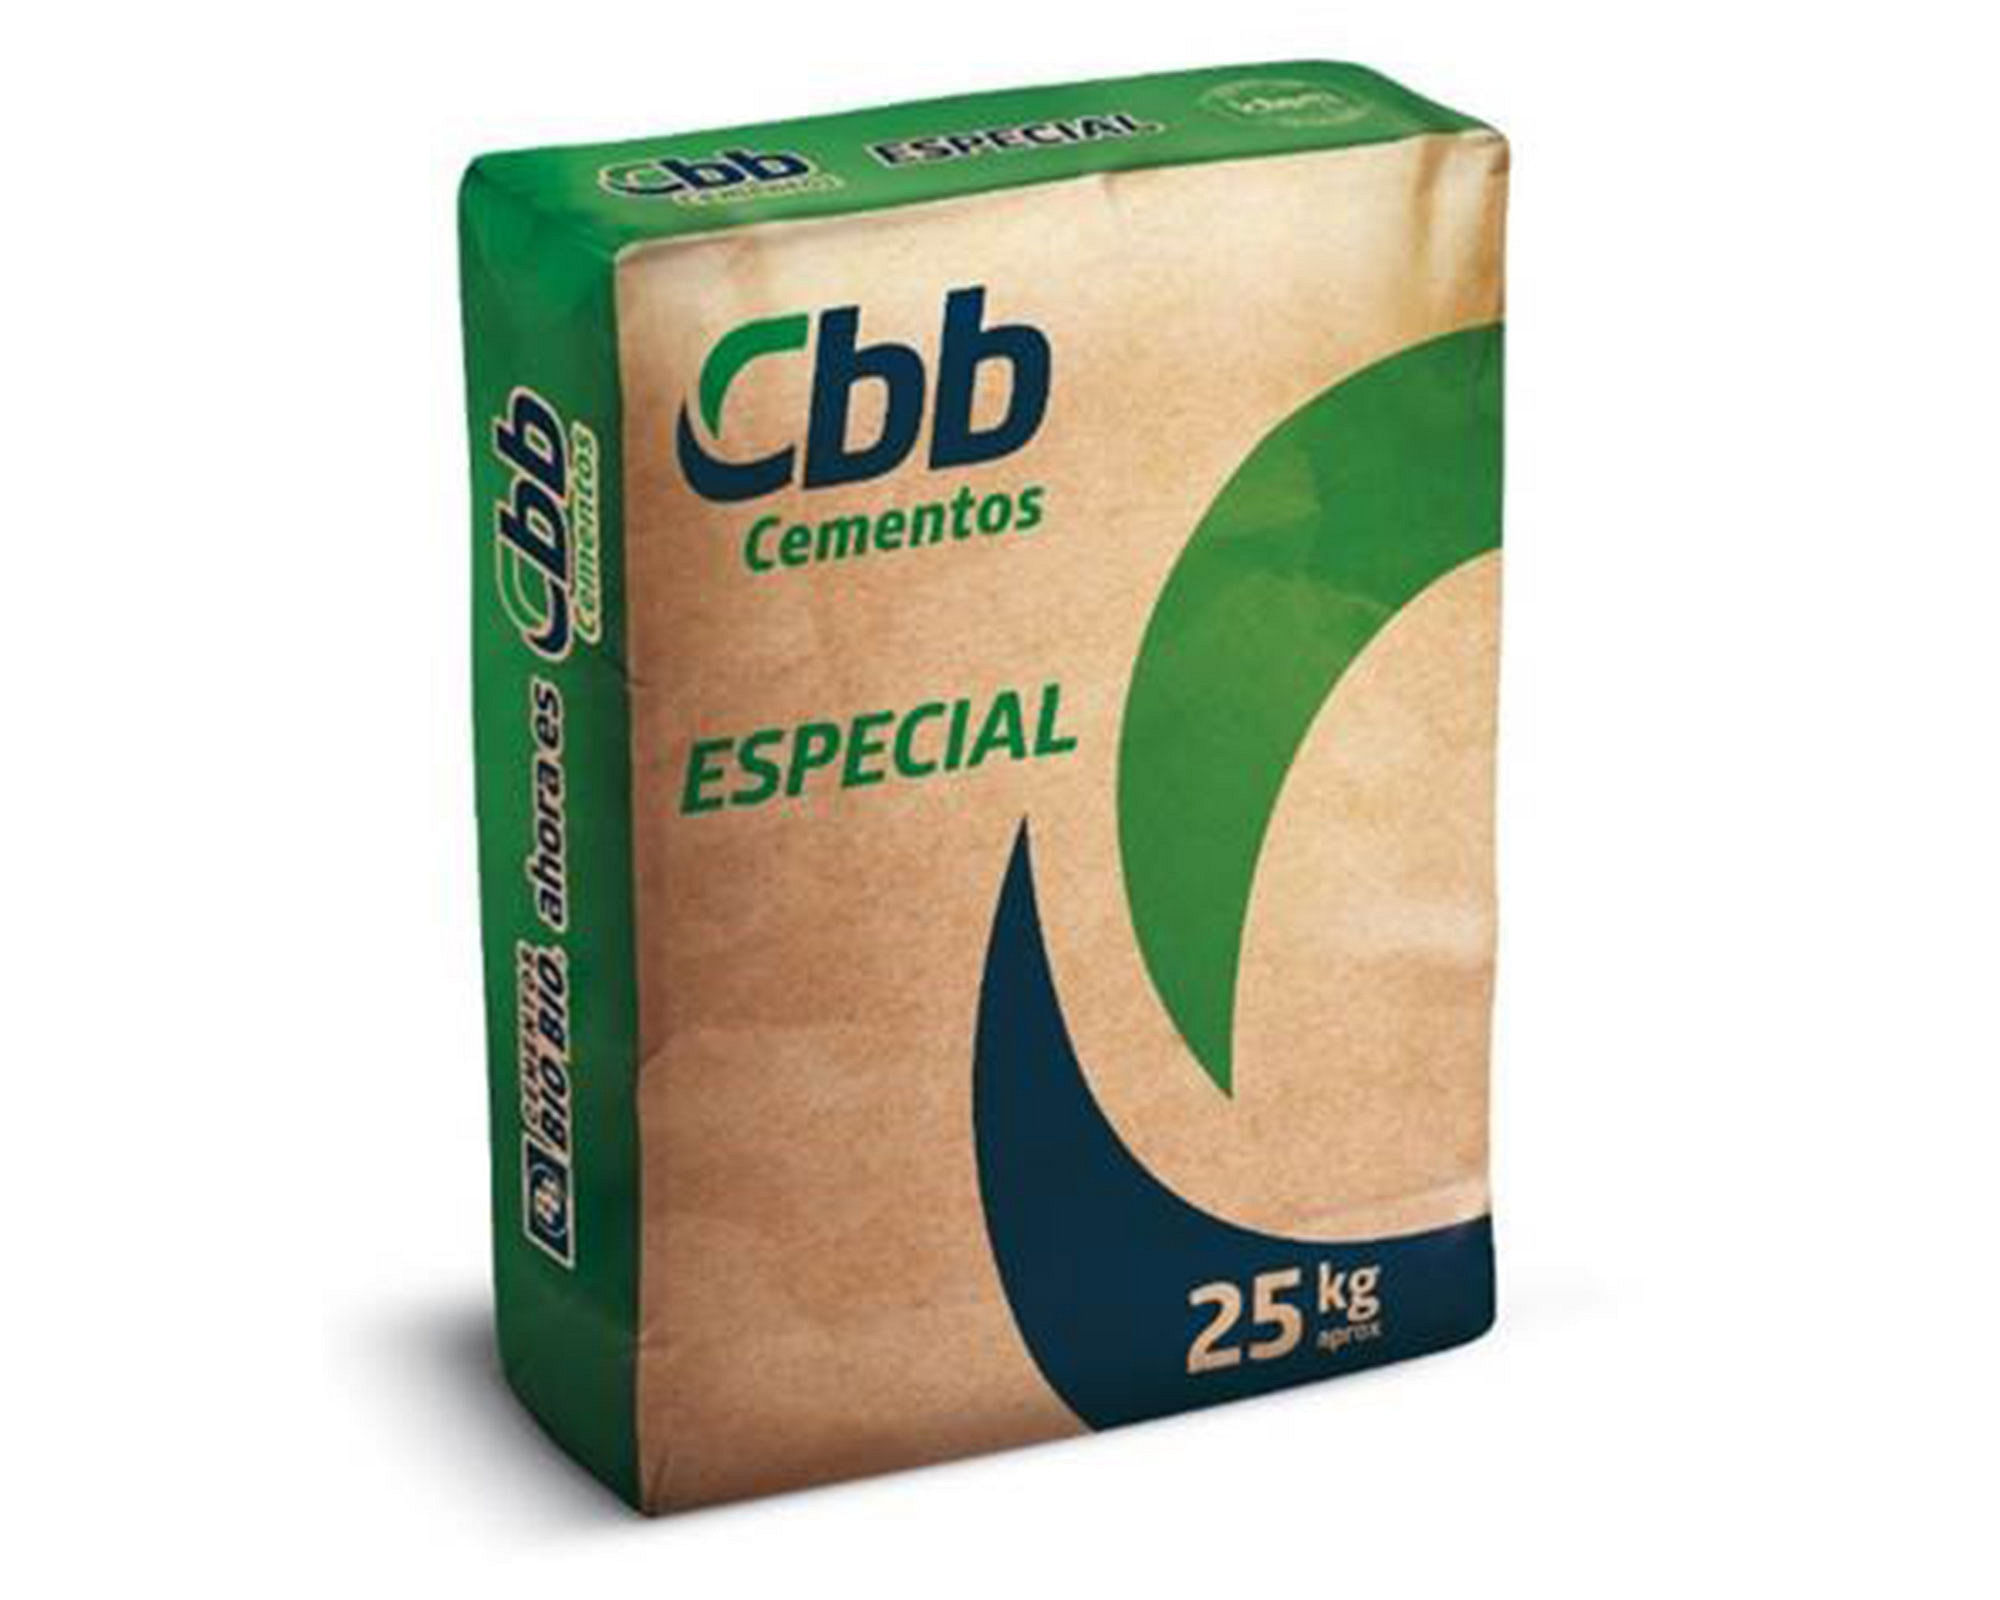 humedad látigo Paternal Cemento especial 25 kg Cbb easy.cl